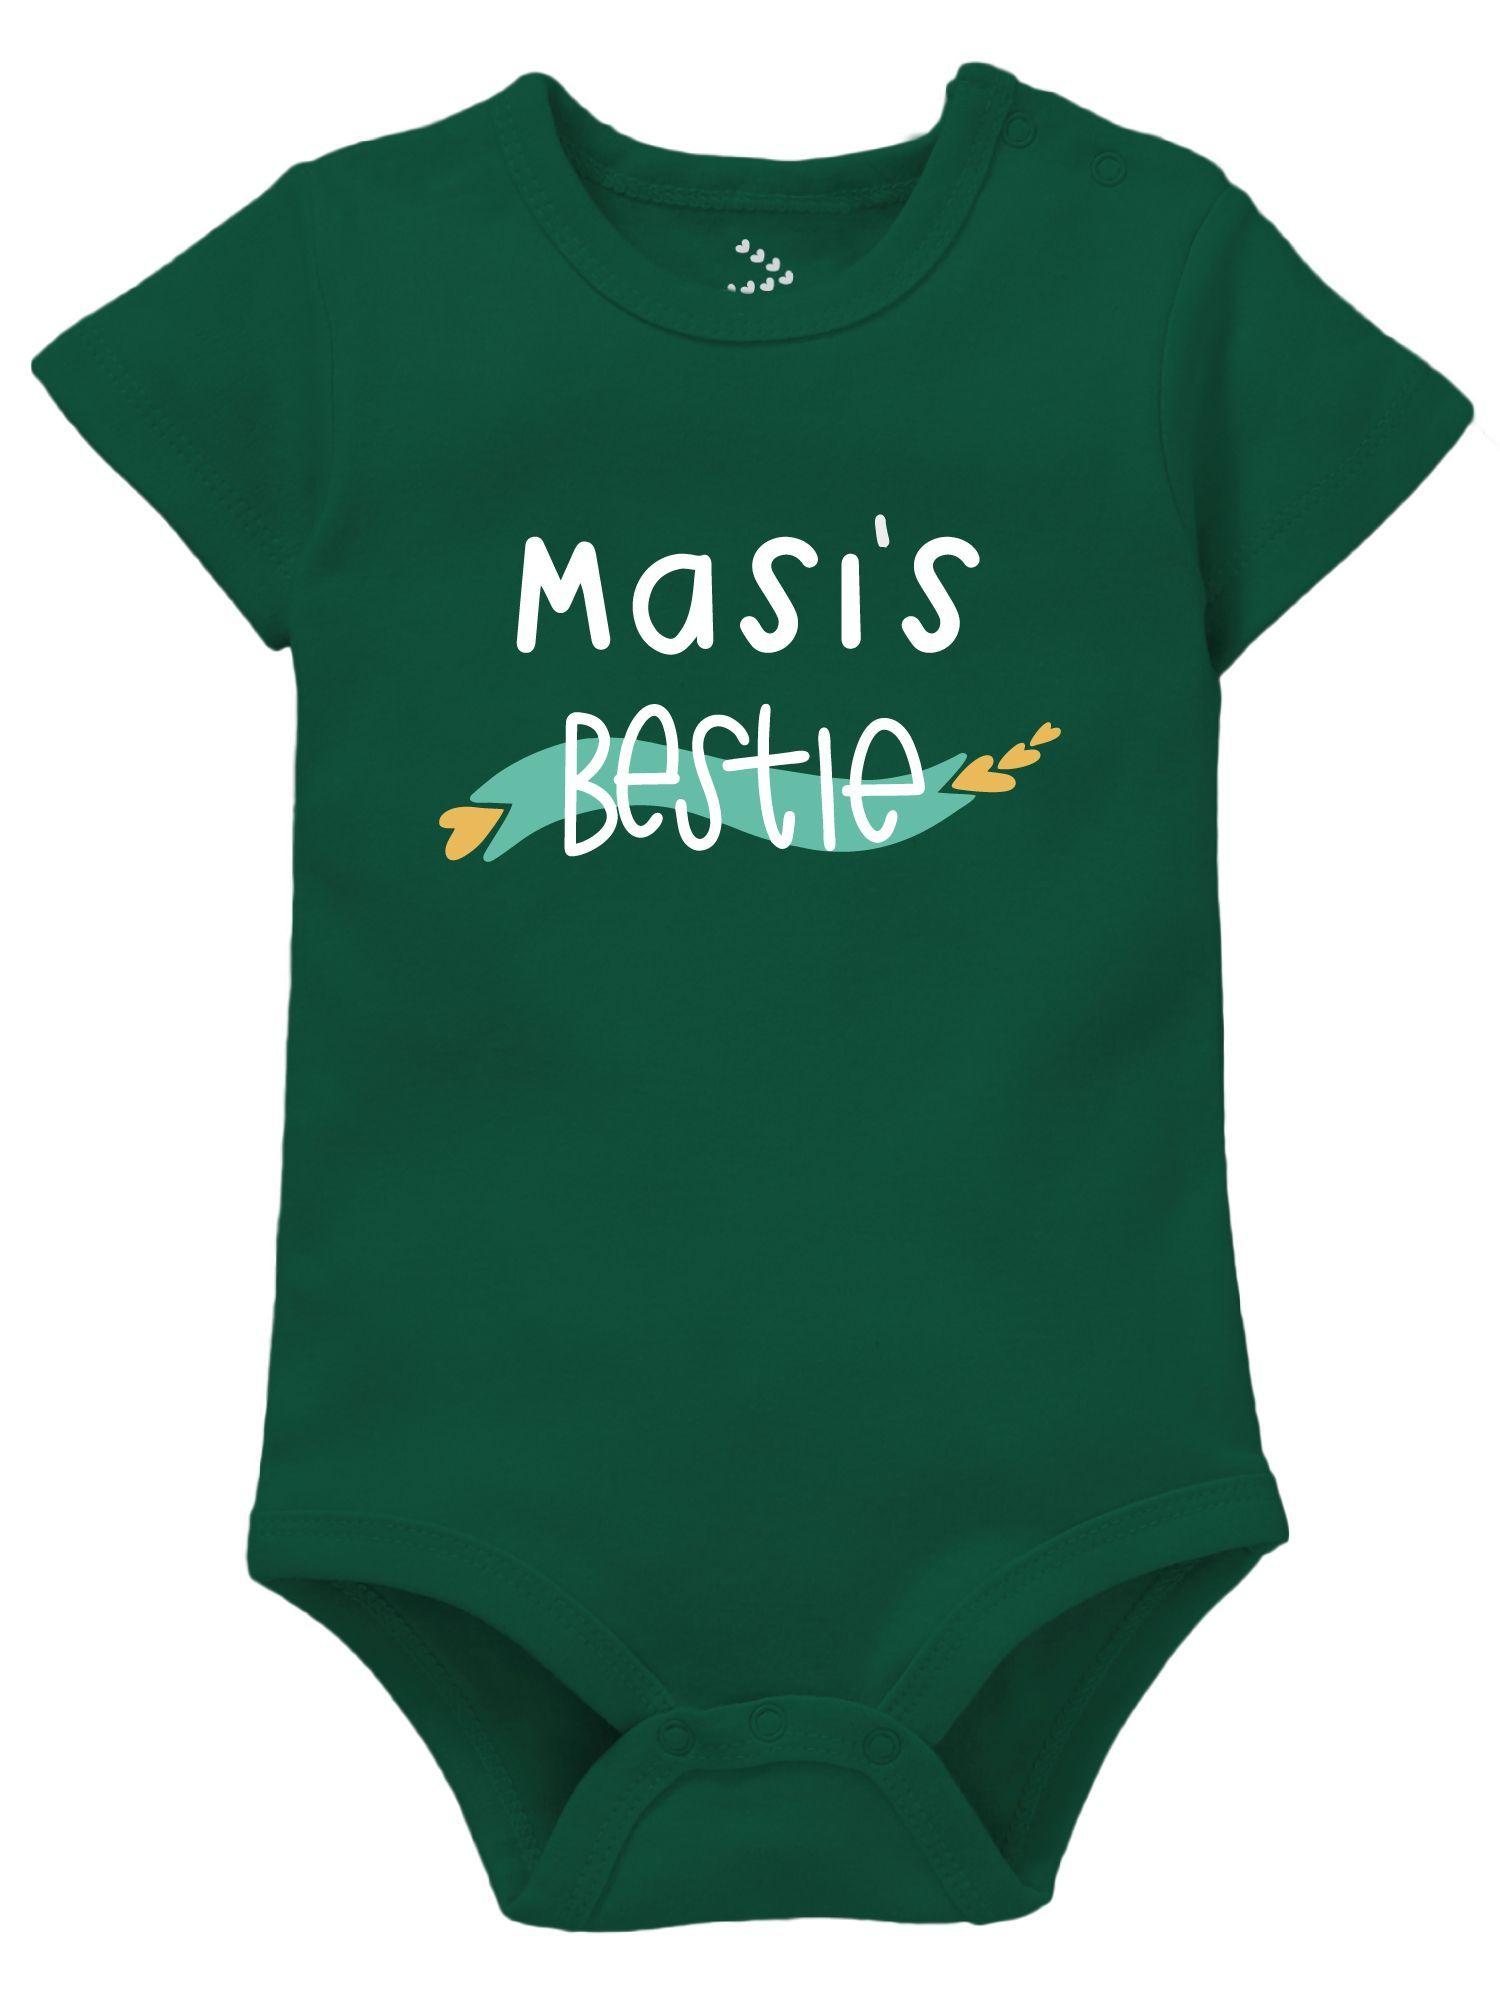 masis bestie newborn baby romper clothes masi & baby theme